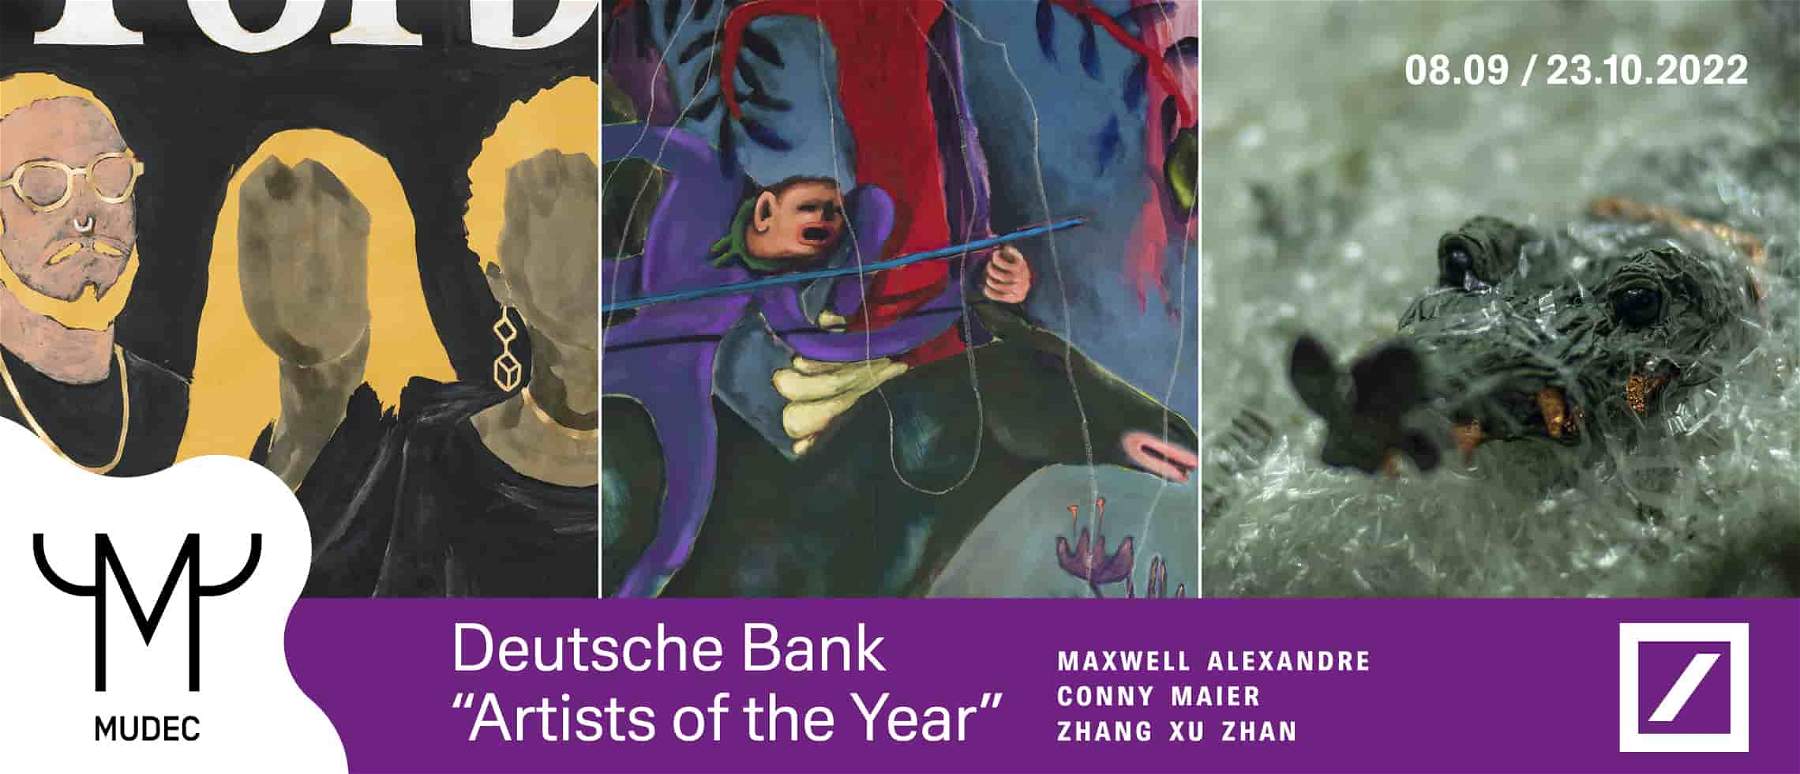 Les lauréats du concours Artists of the Year 2021 de la Deutsche Bank exposés au MUDEC